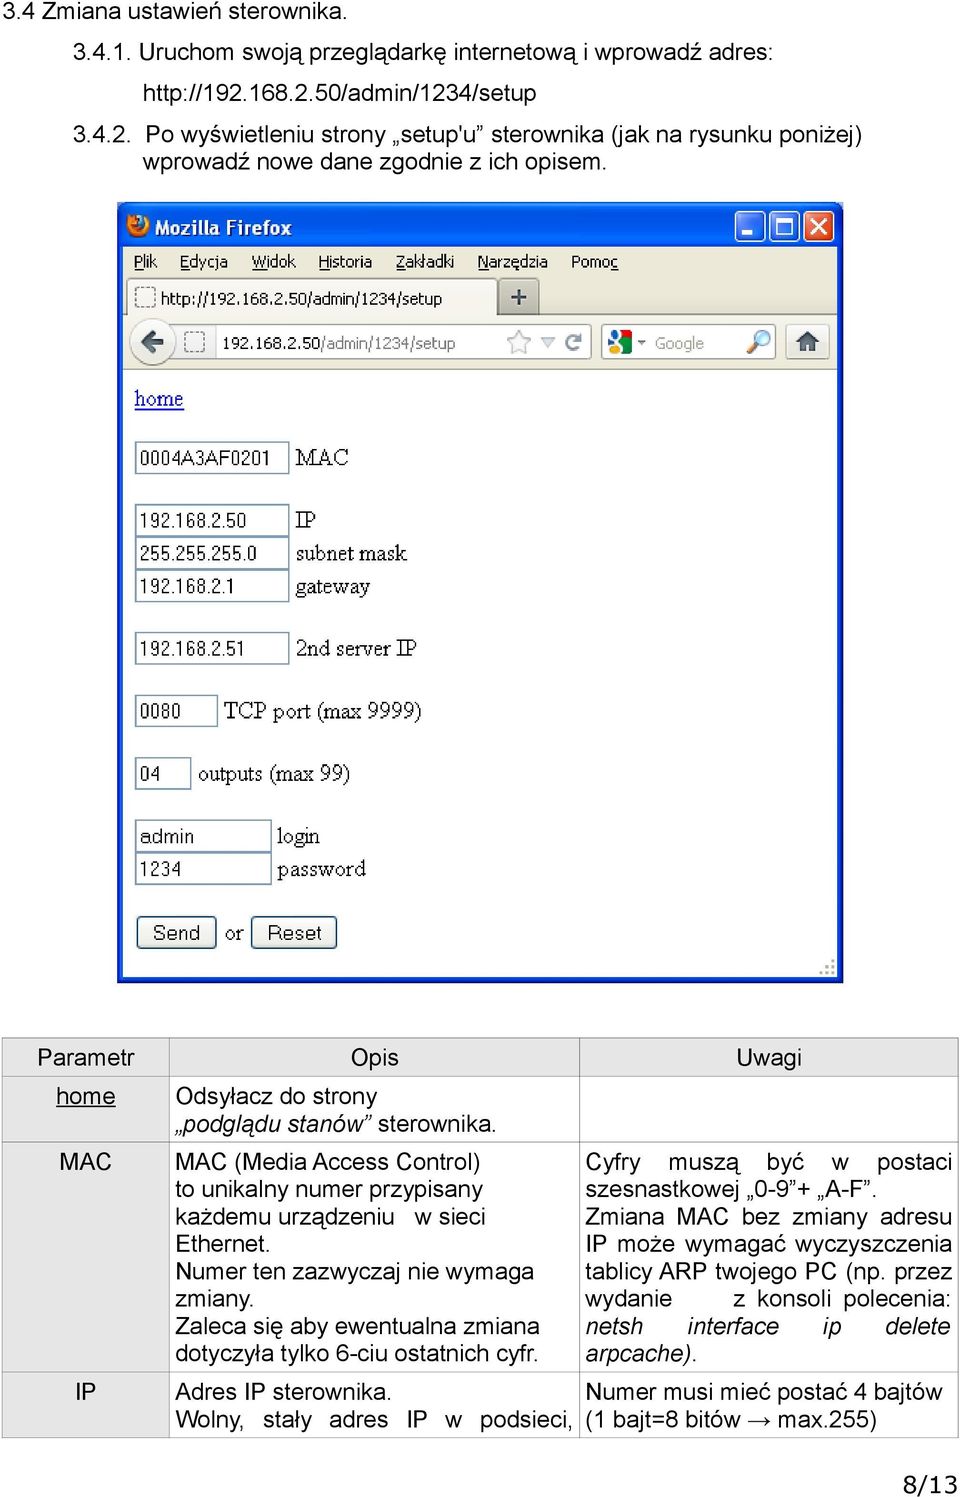 Parametr Opis Uwagi home MAC IP Odsyłacz do strony podglądu stanów sterownika. MAC (Media Access Control) to unikalny numer przypisany każdemu urządzeniu w sieci Ethernet.